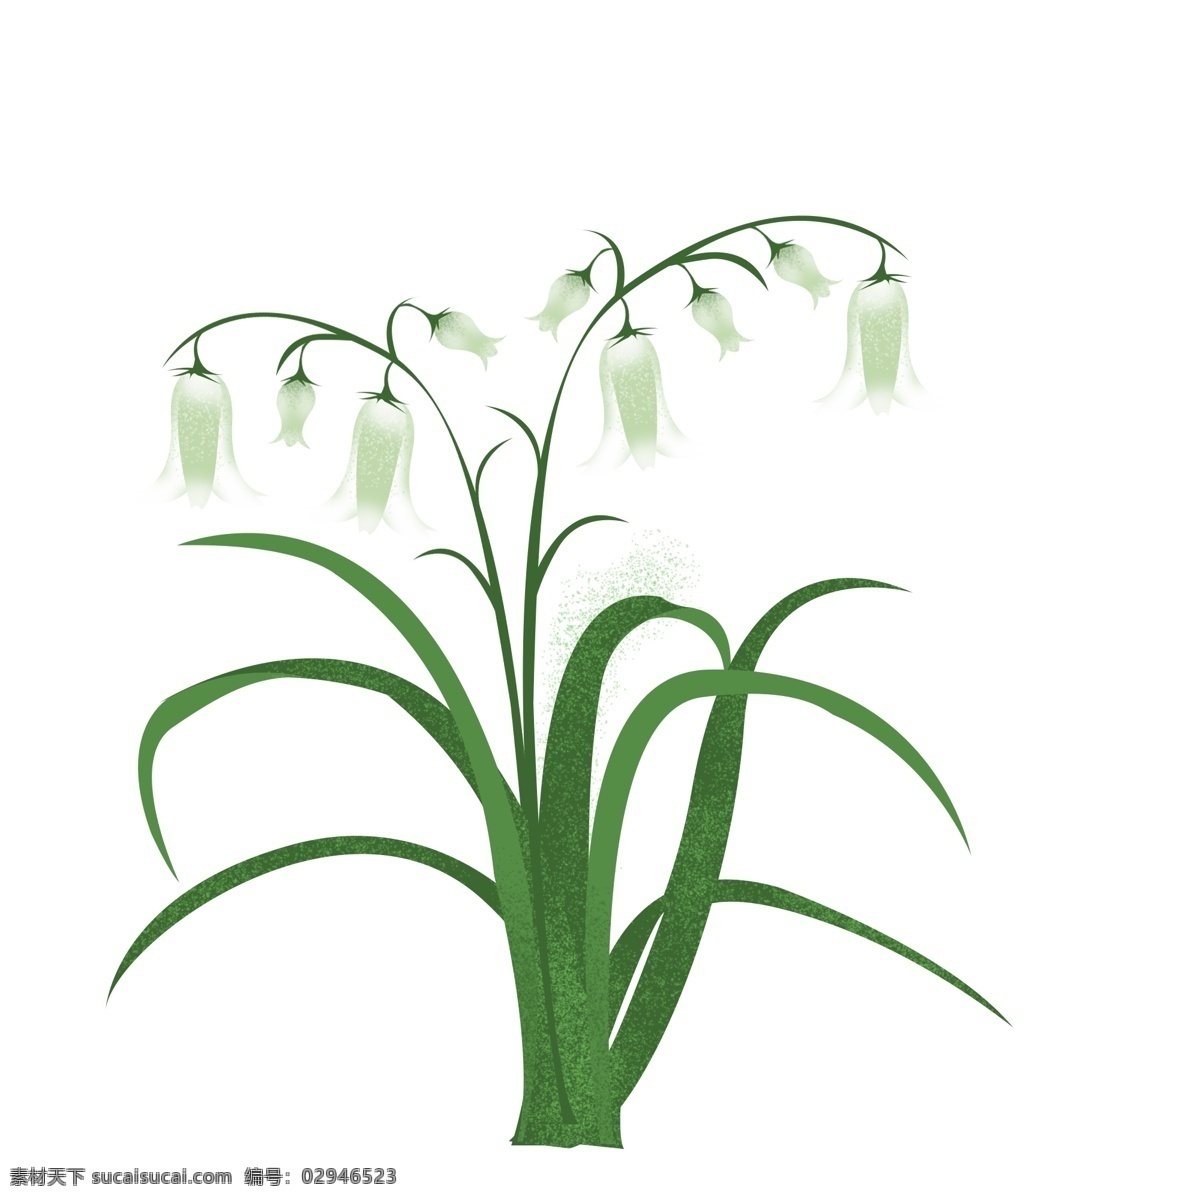 春天 元素 白色 花朵 花枝 花卉 绿叶 手绘 简约 风 手绘风